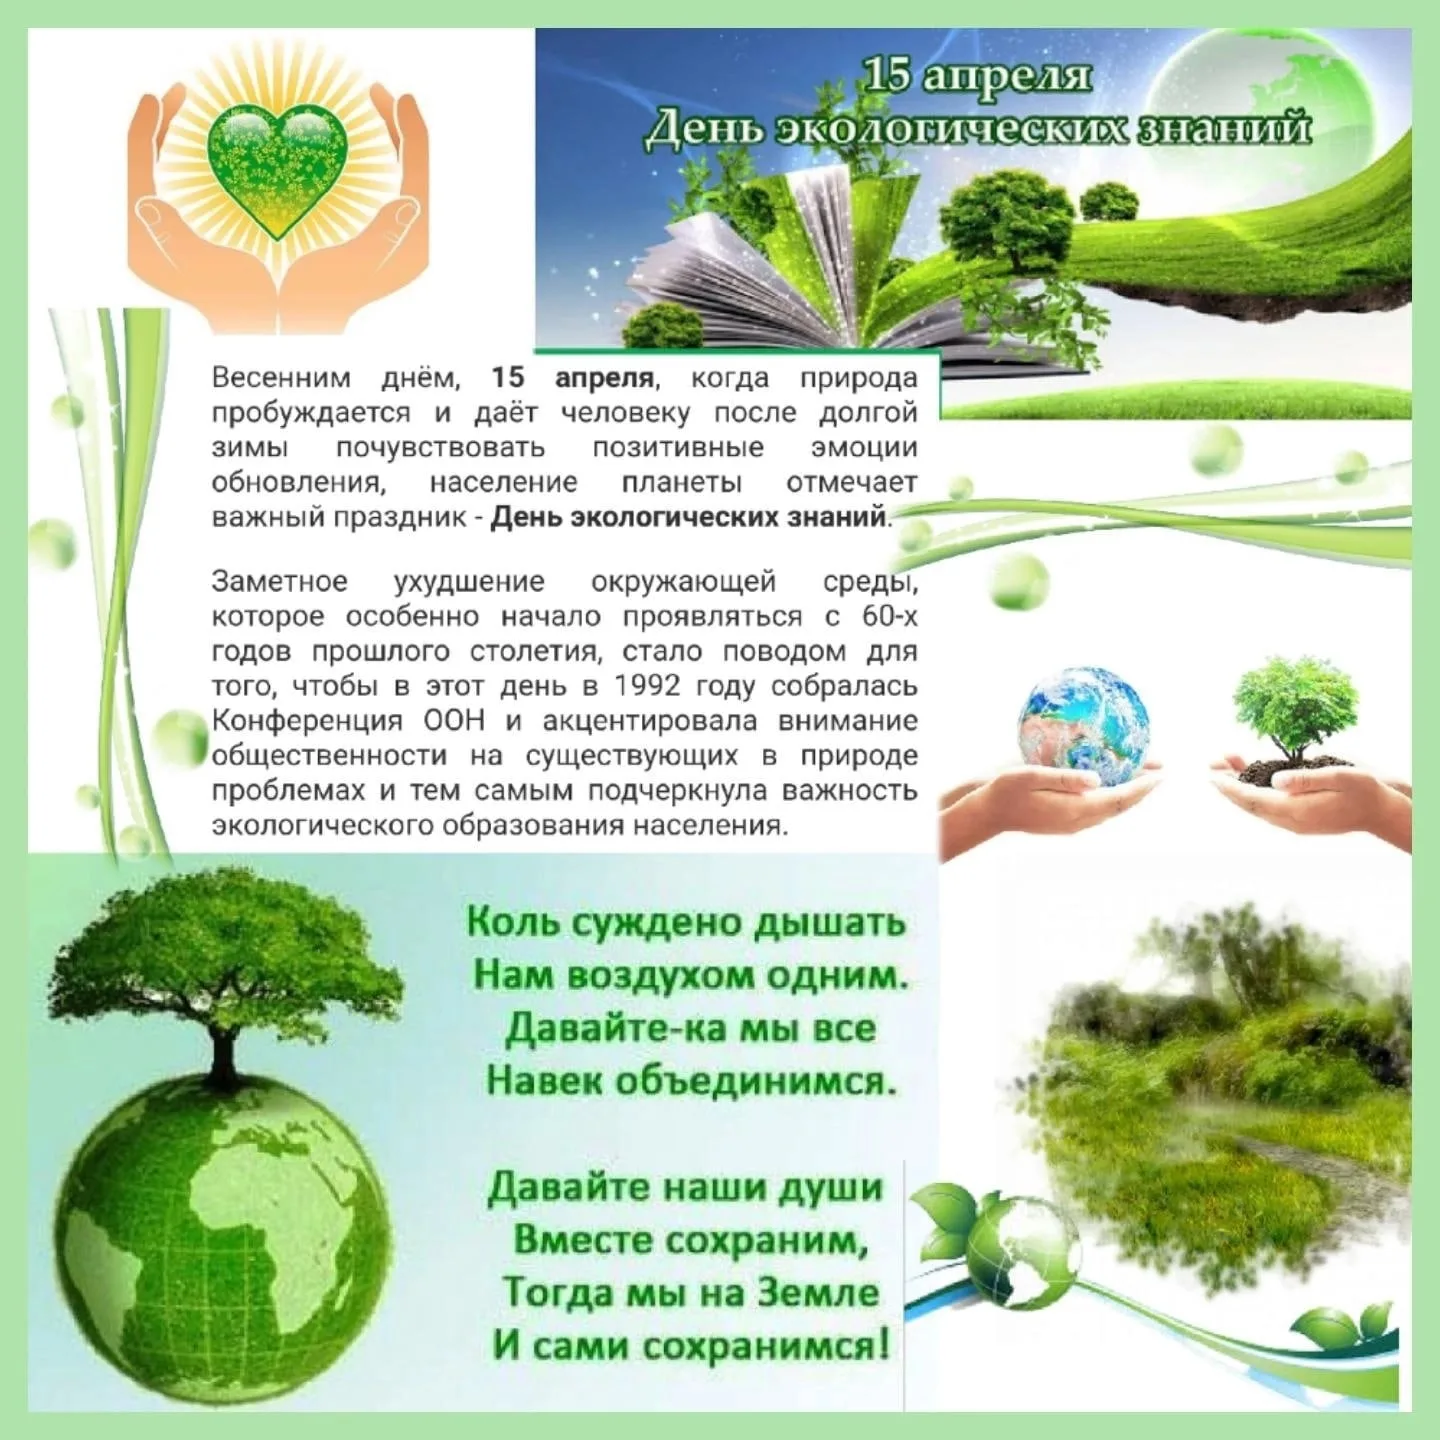 15 апреля день экологических знаний для детей. День экологических знаний. 15 Апреля Всемирный день экологических знаний. 15 Апреля – день экологических знаний (в рамках экологических дней). Открытка день экологических знаний.